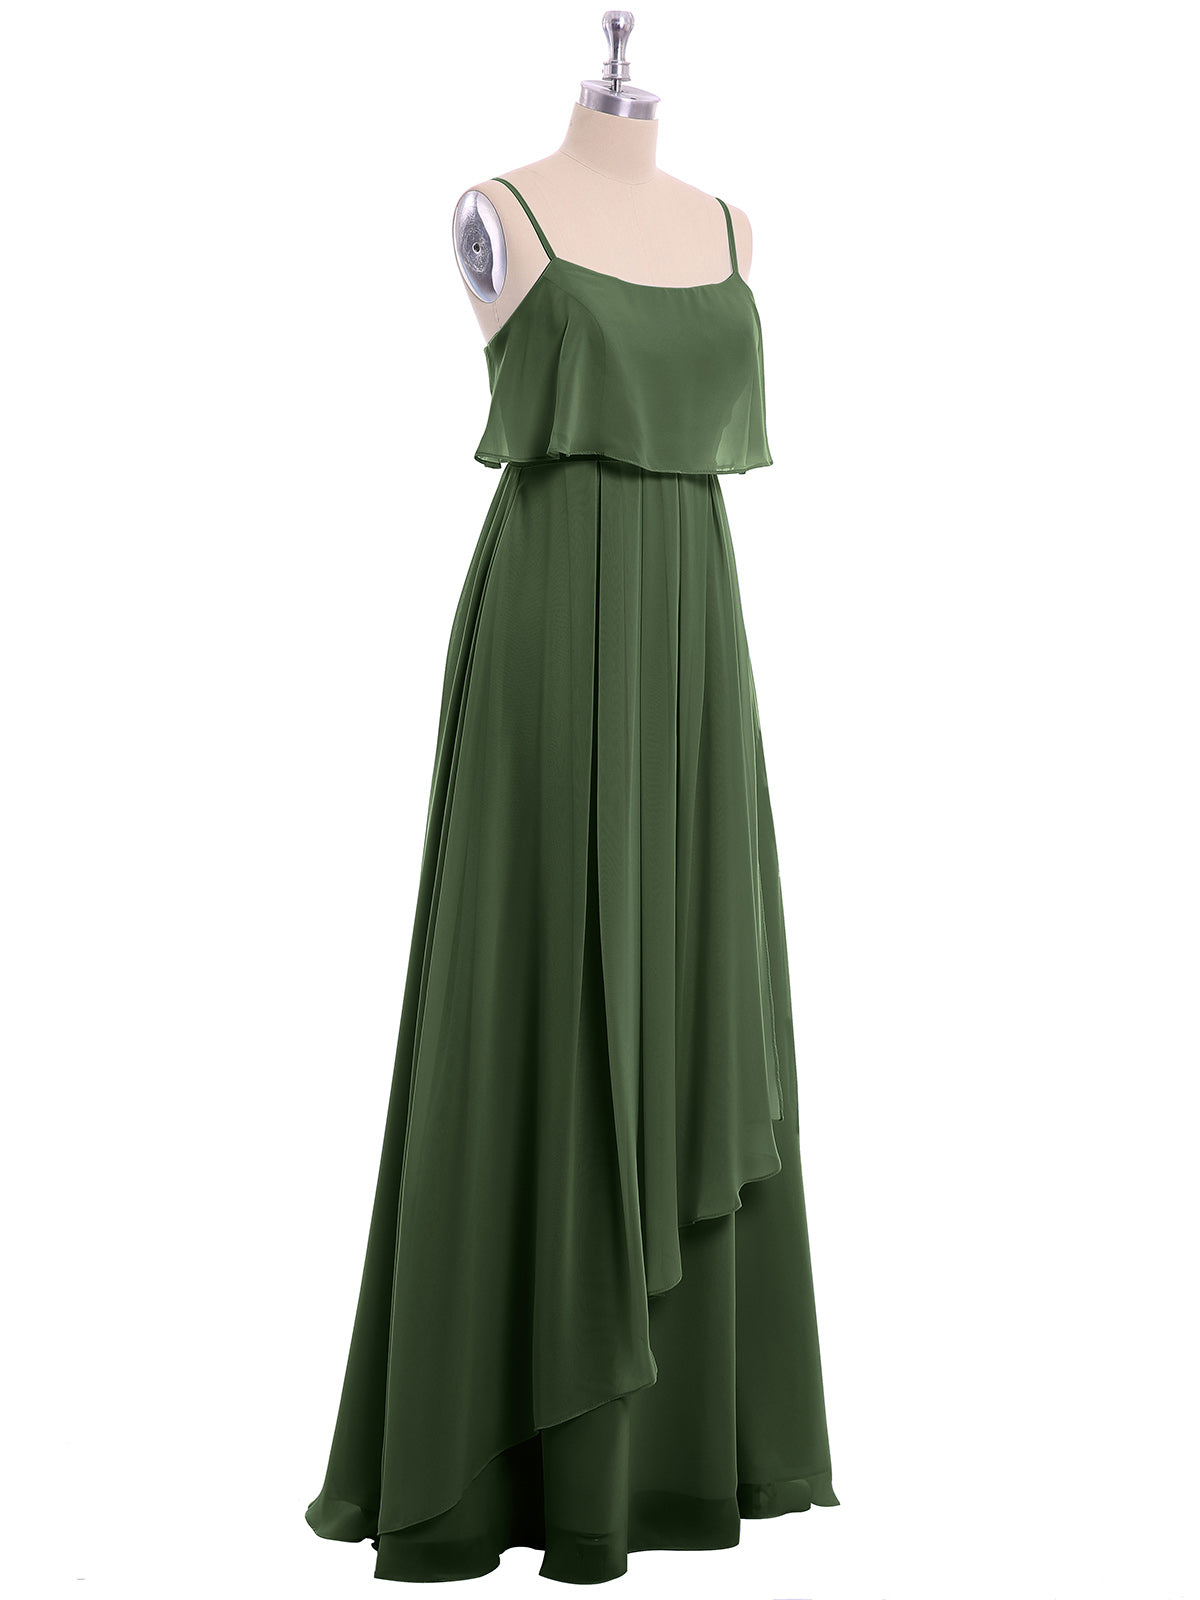 Vestido de chiffon con tirantes finos y falda tipo cascada Verde Oliva